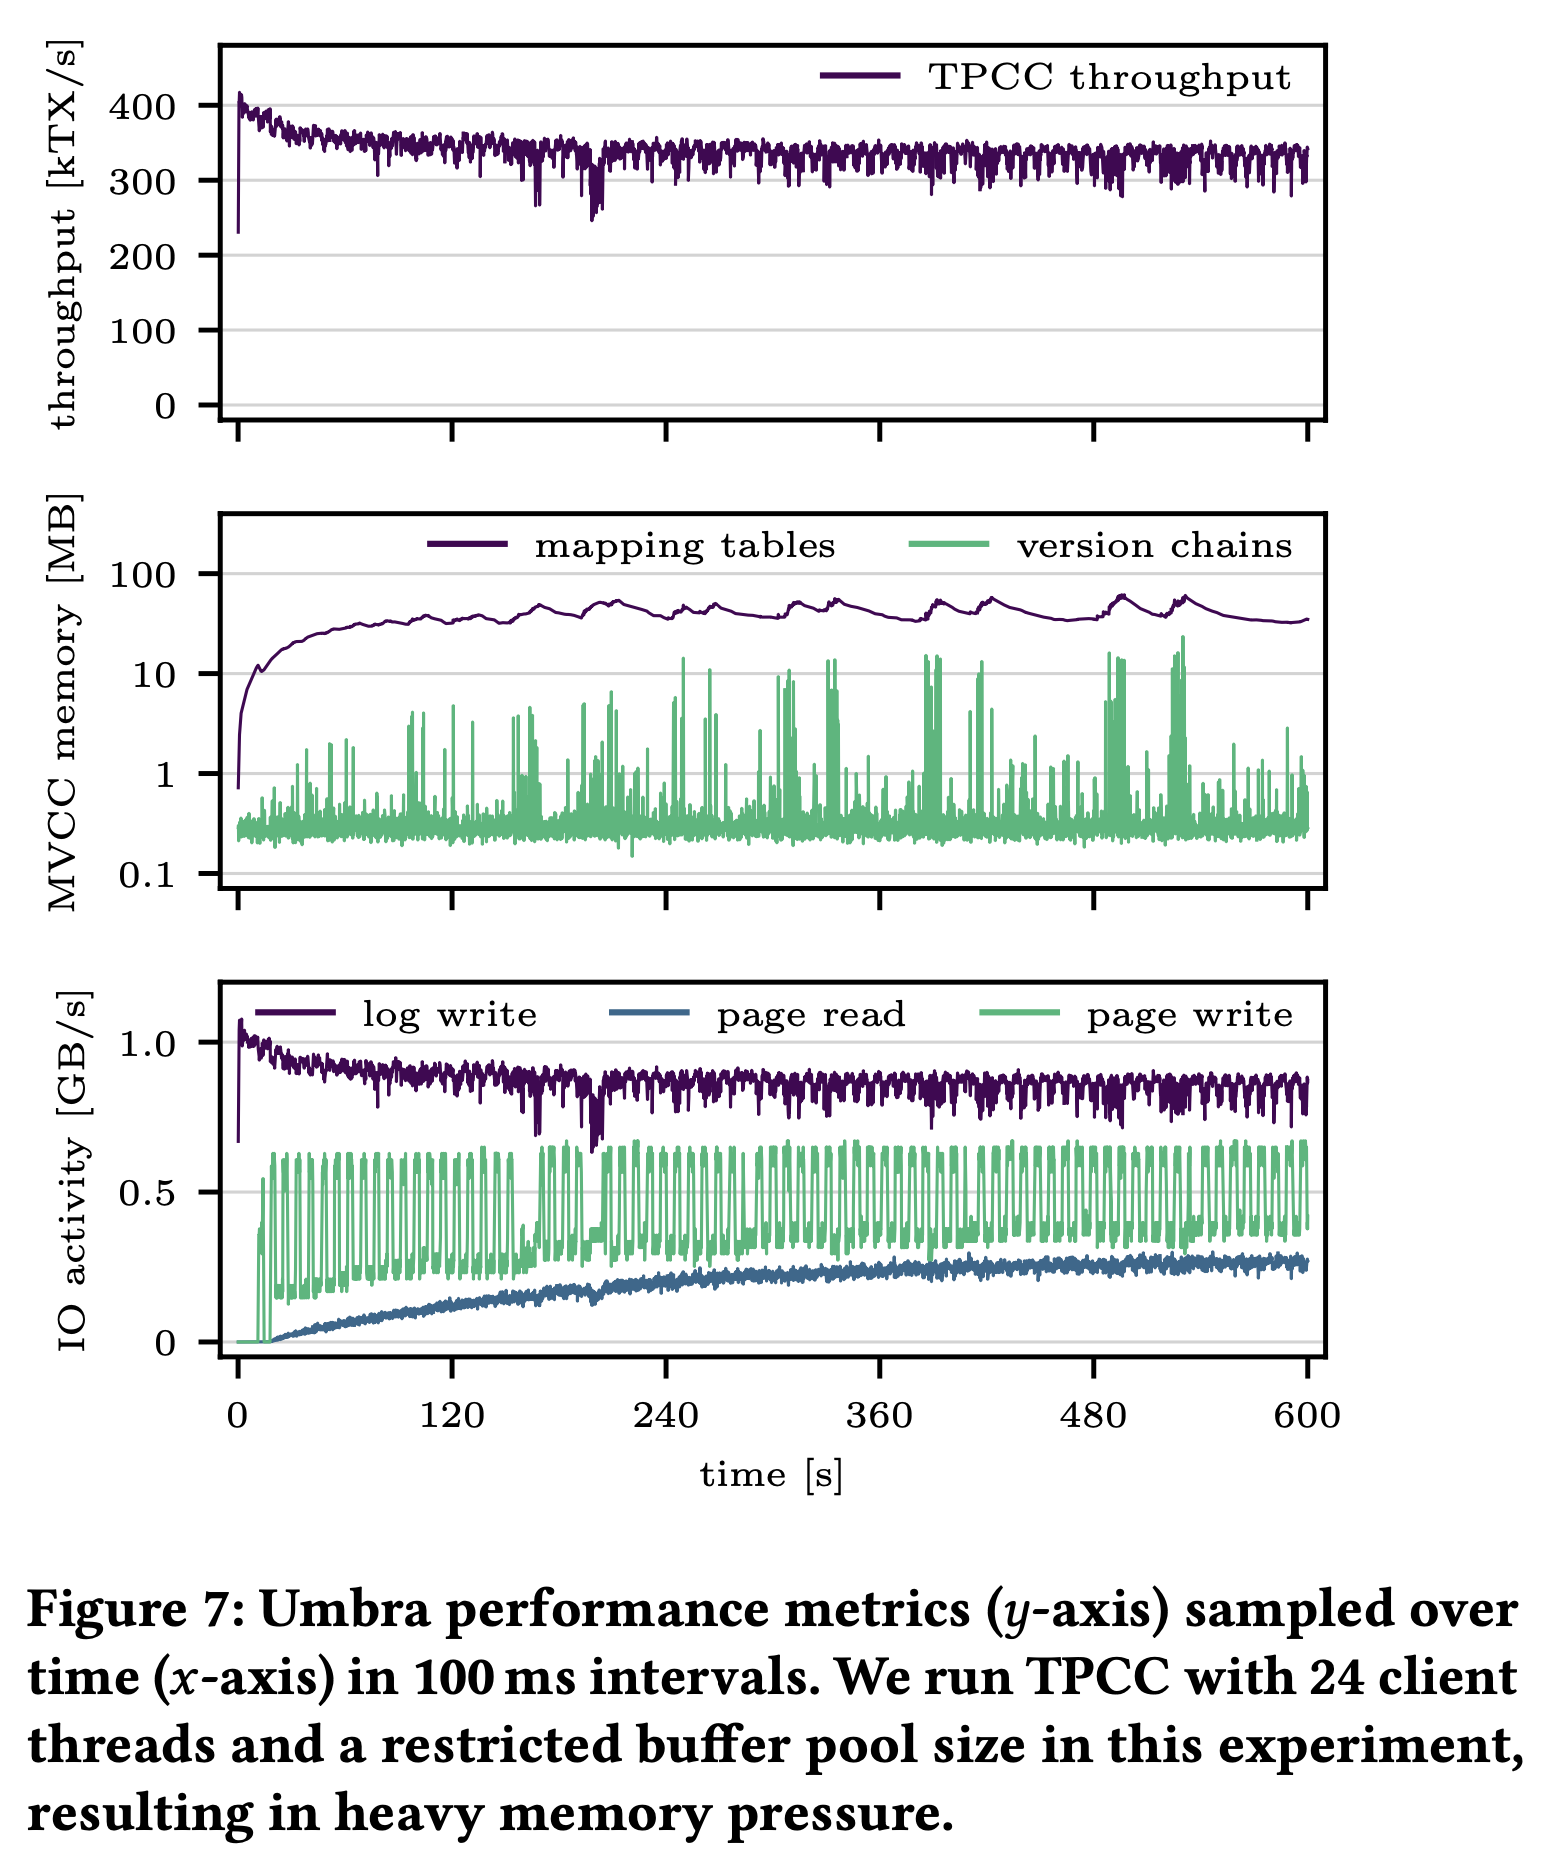 Figure 7: Umbra performance metrics